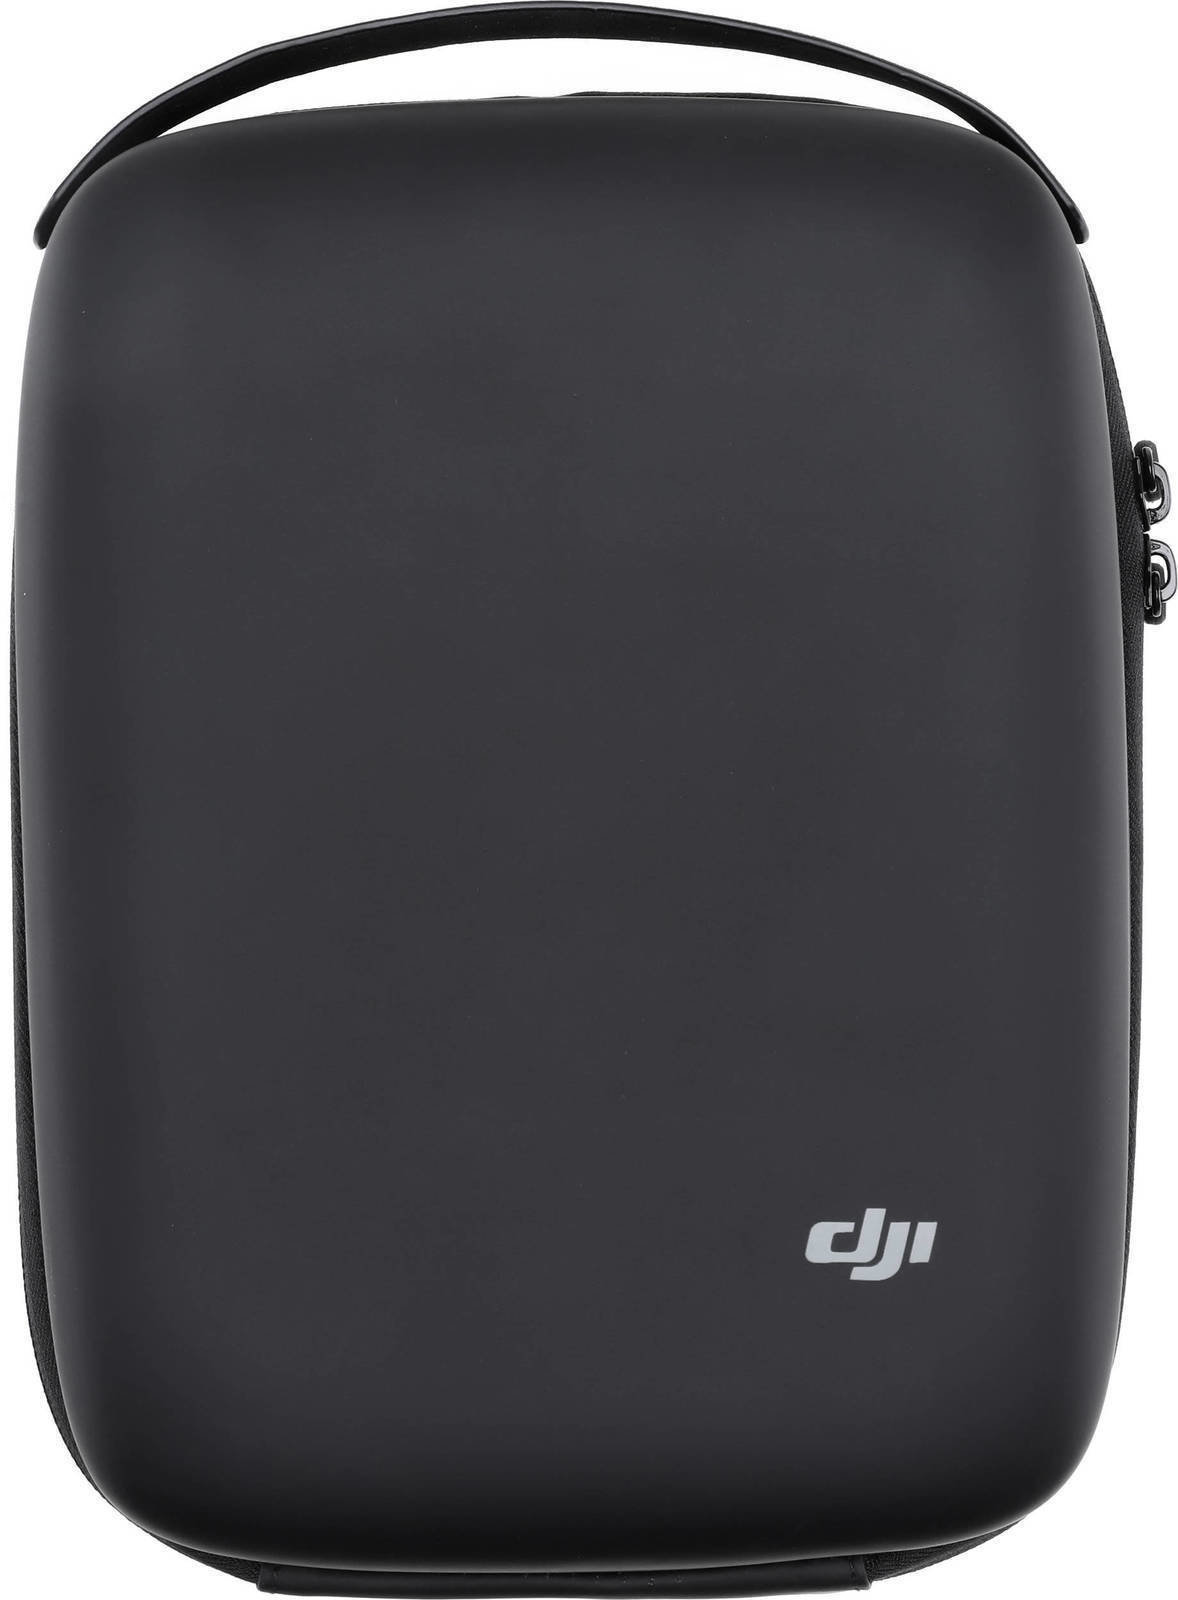 Φορτιστής για Drones DJI Spark - Portable Charging Station Carrying Bag - DJIS0200-09